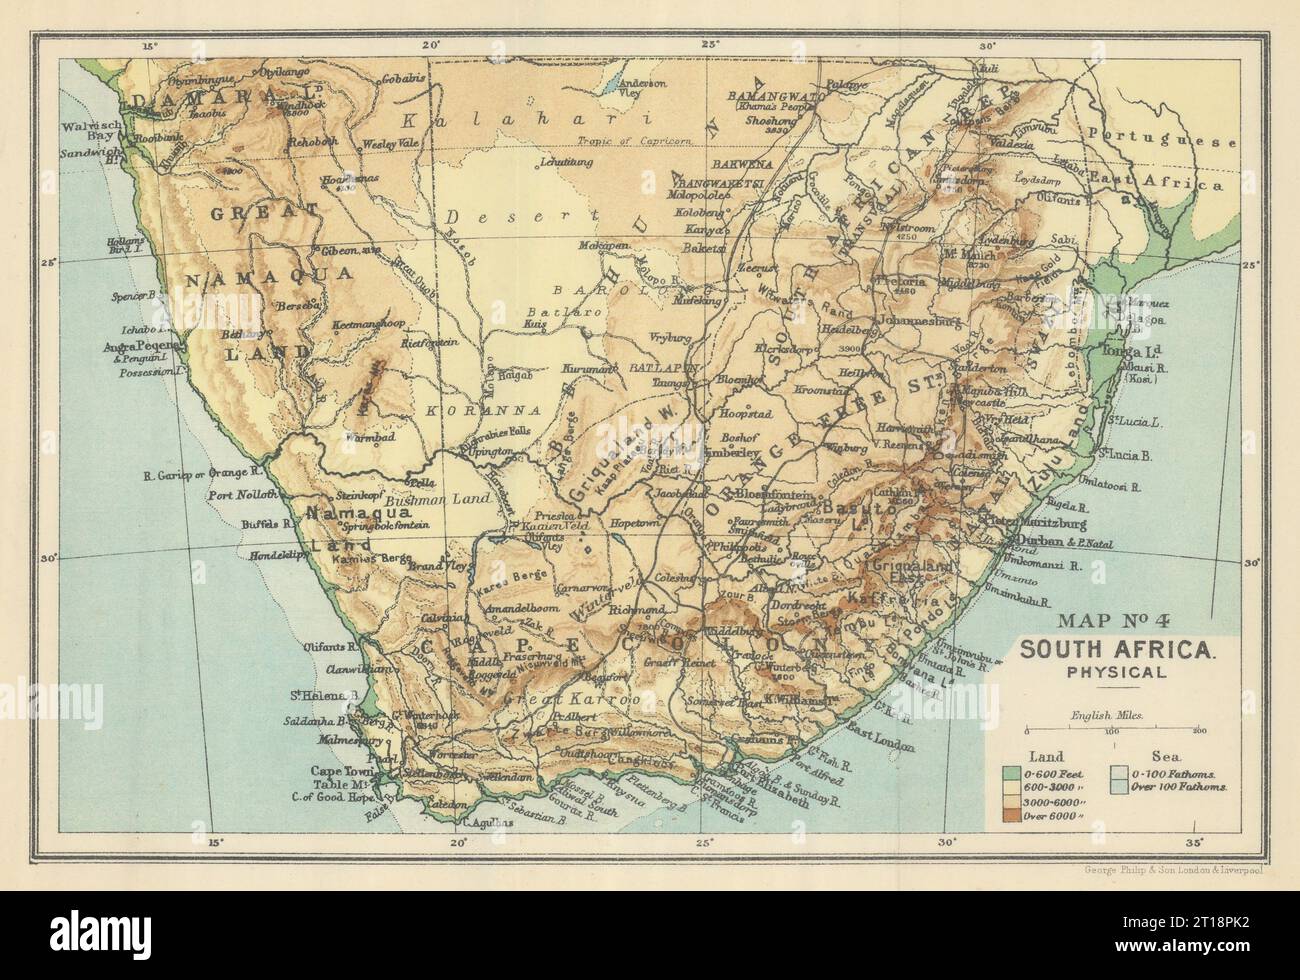 Afrique du Sud - physique. Élévation. SAMLER BROWN 1899 ancienne carte antique Banque D'Images